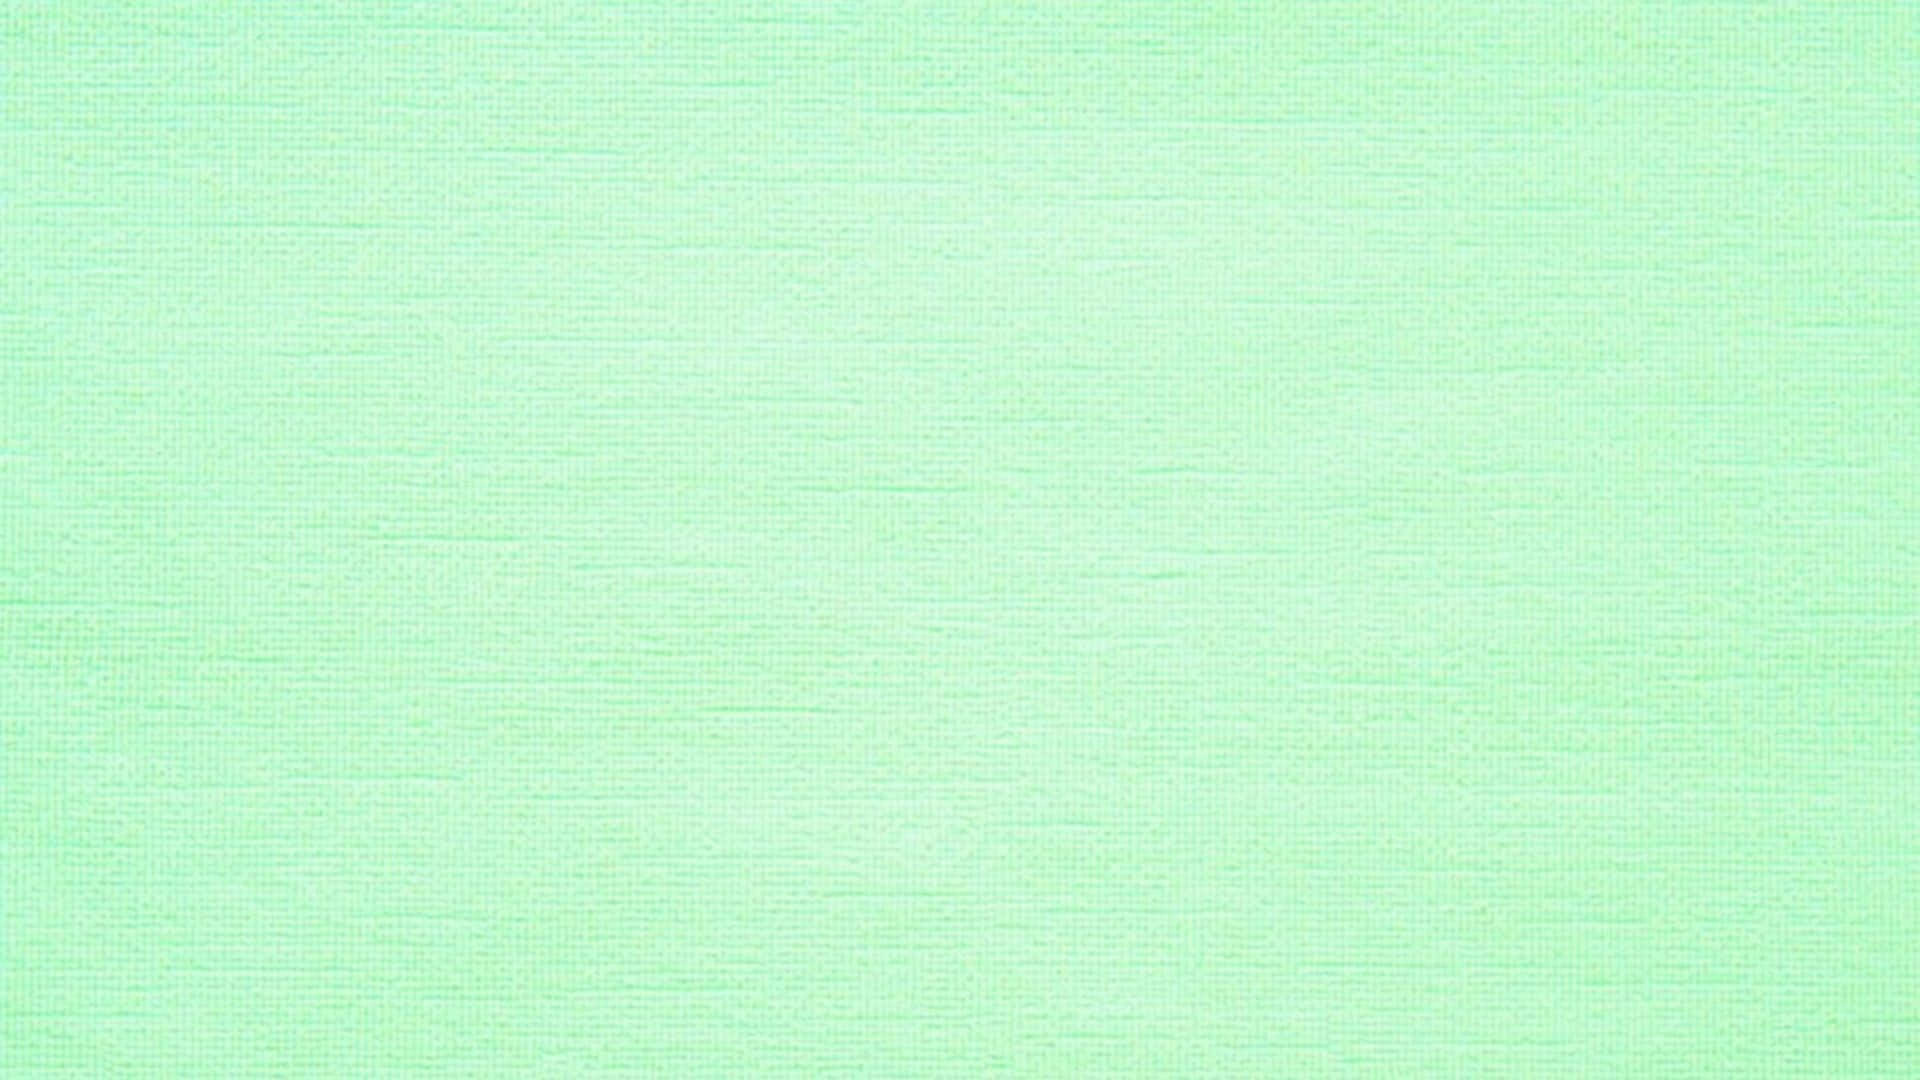 Etberoligende Visuelt Billede Af En Smuk Mintgrøn Baggrund.